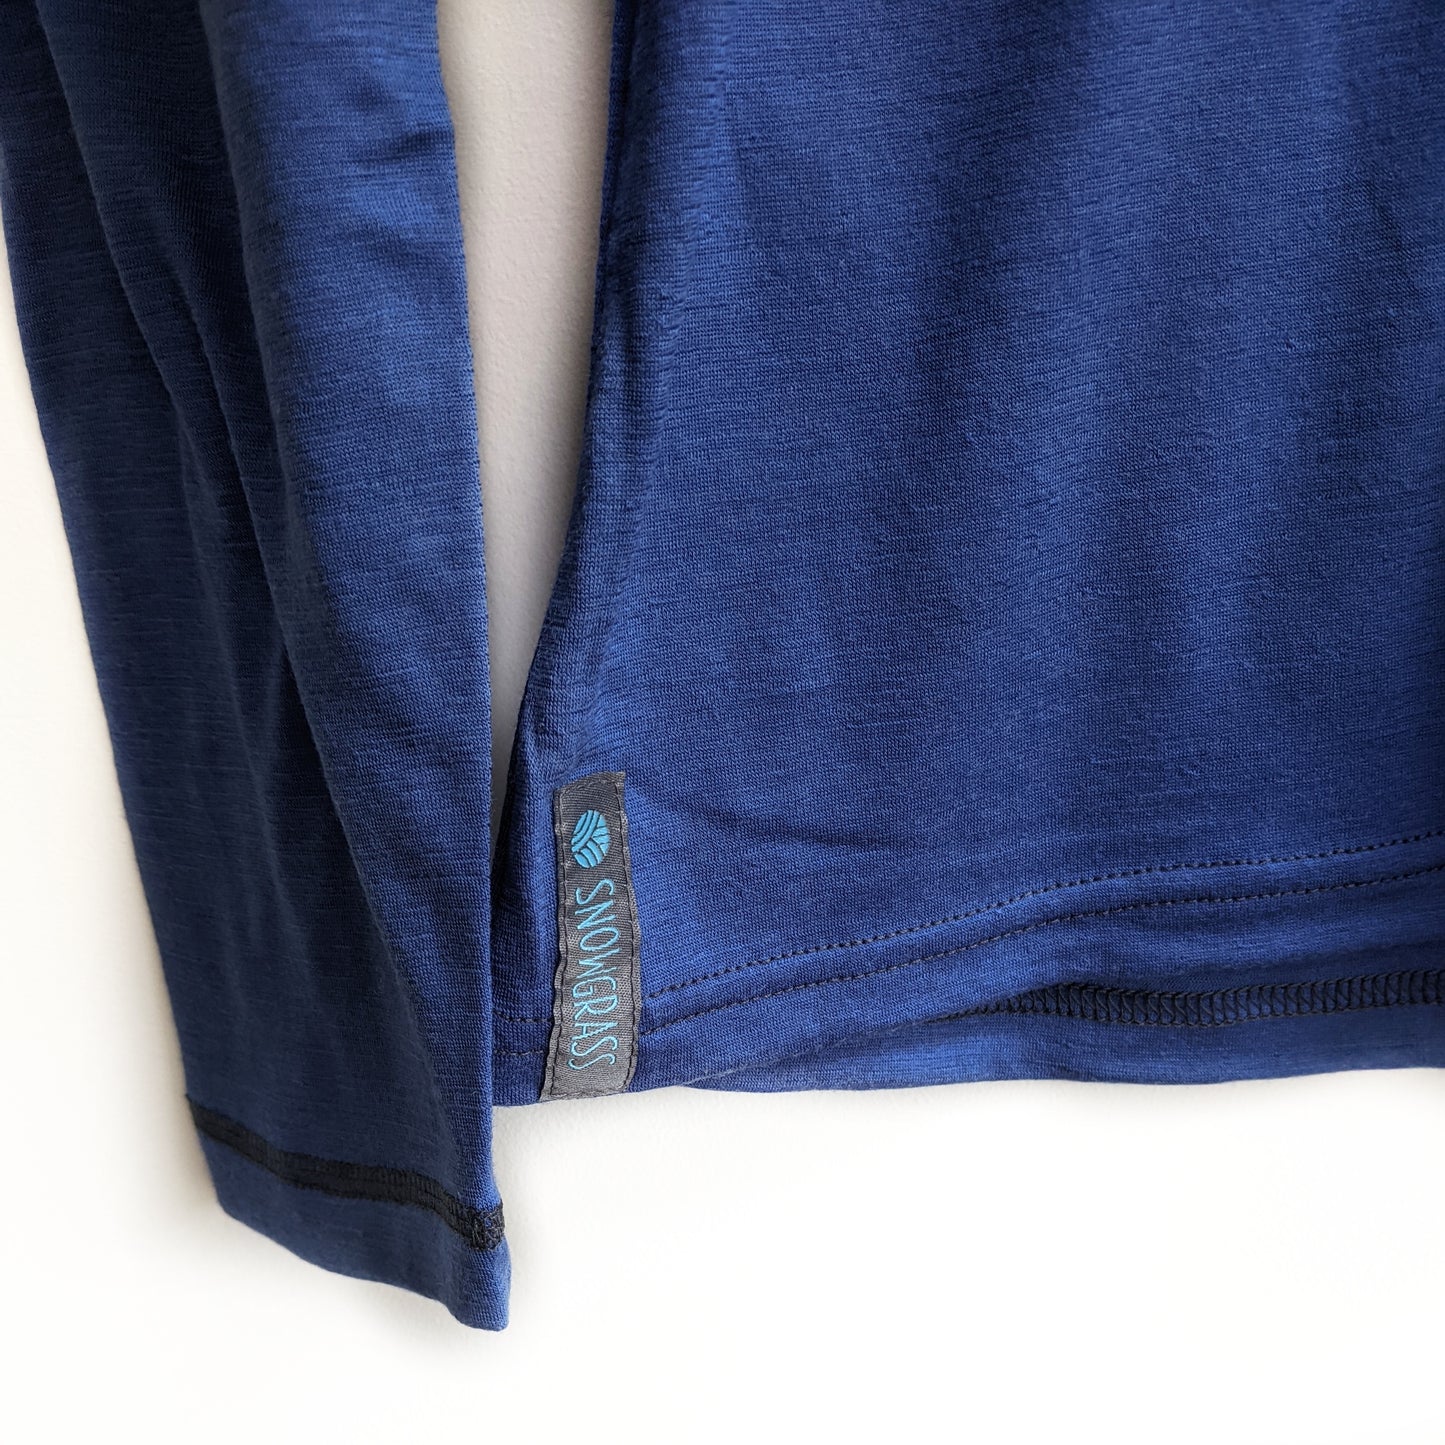 Lapis Blue Long Sleeved Merino Wool Womens Top